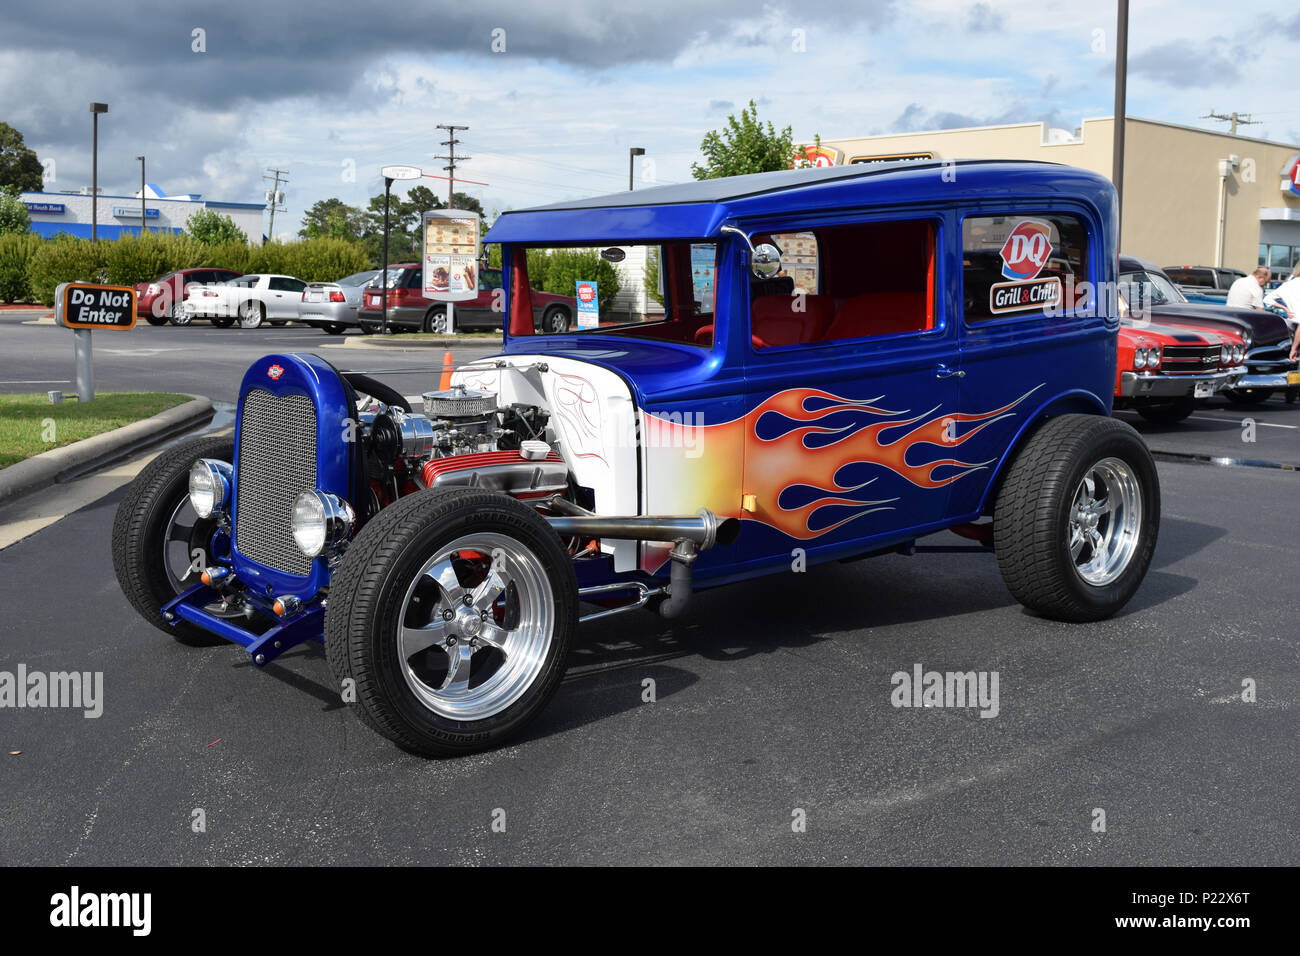 A custom Hot Rod car at a Car Show Stock Photo - Alamy